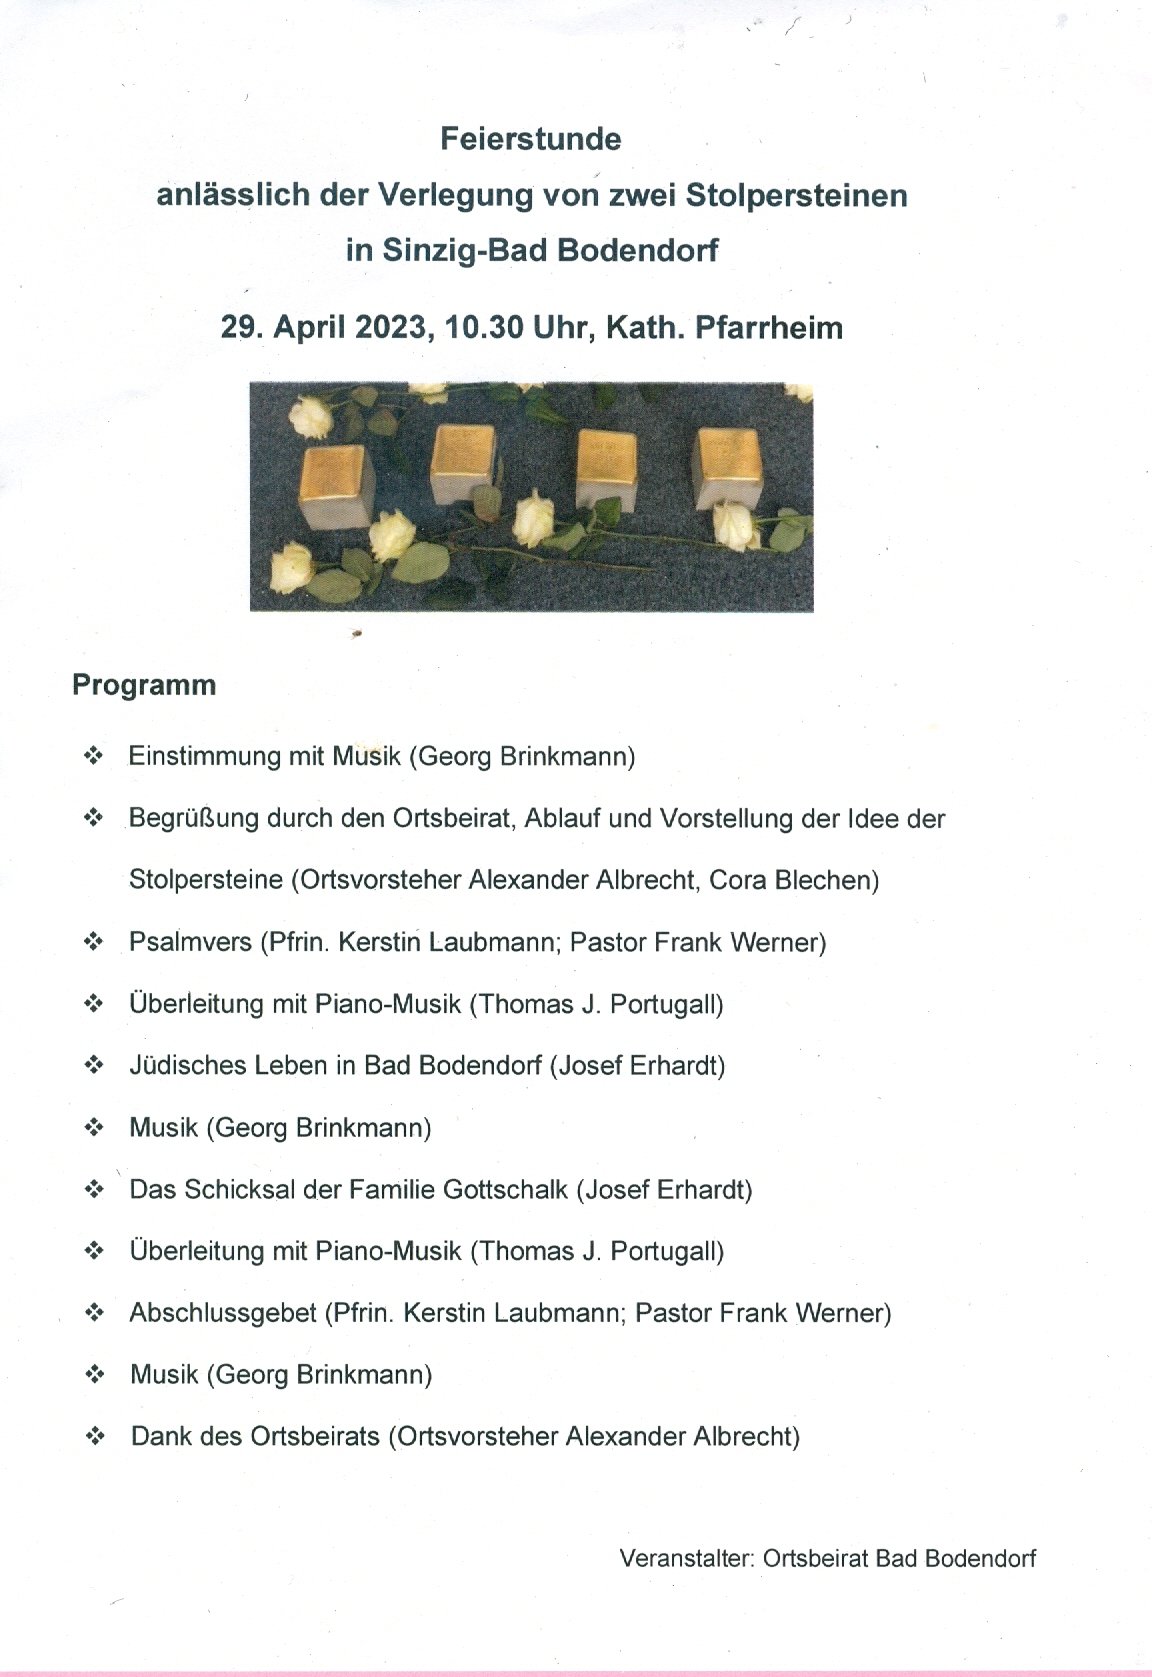 Programm zur Feierstunde anlässlich der Stolpersteinverlegung in Bad Bodendorf (Heimatarchiv Bad Bodendorf CC BY-NC-SA)